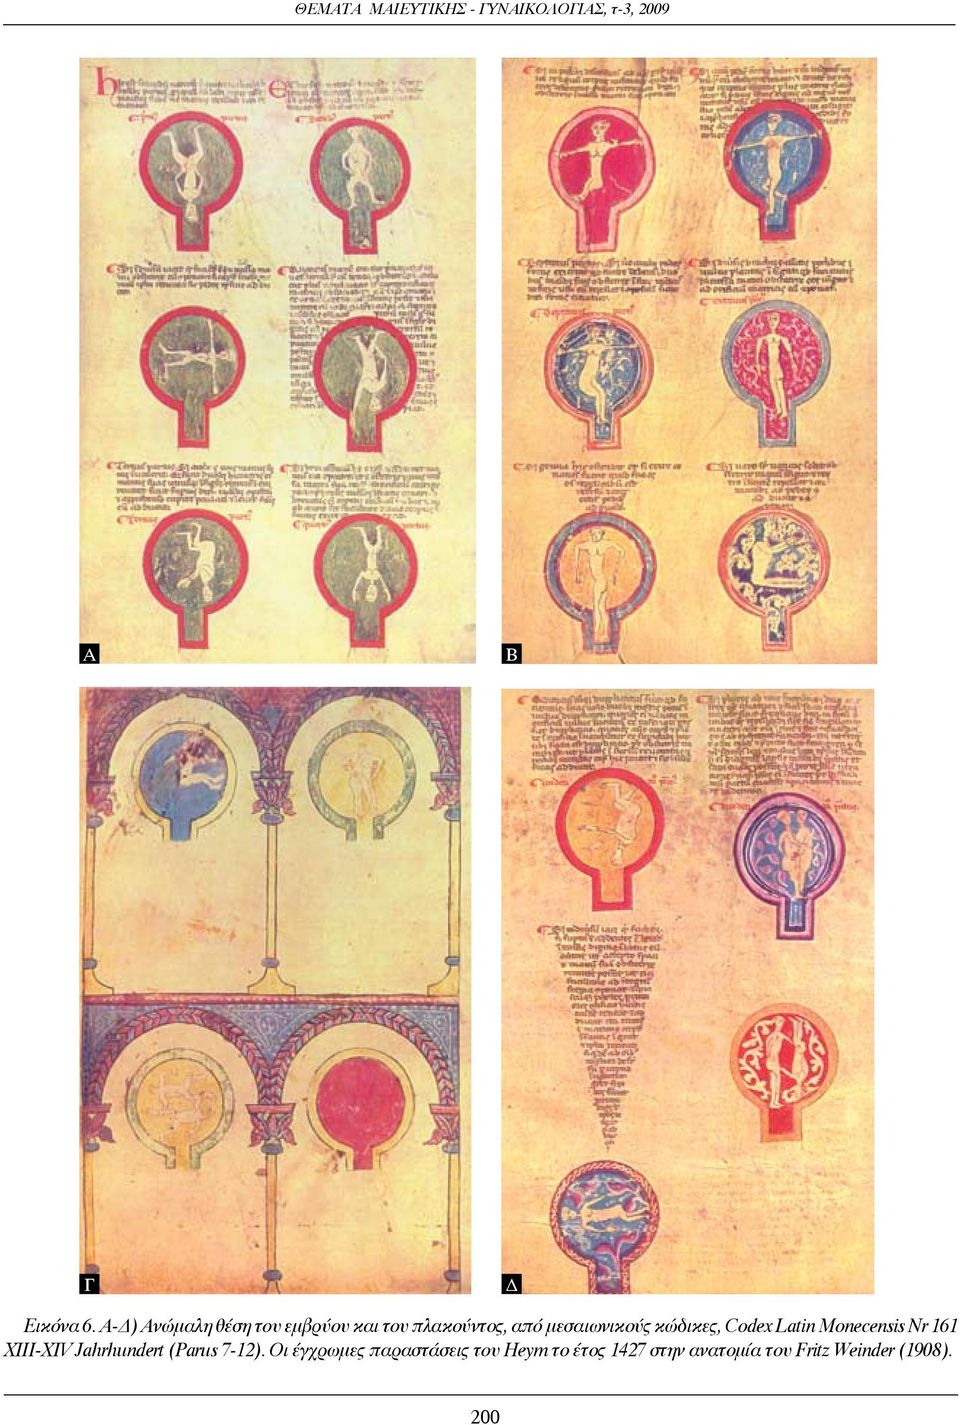 μεσαιωνικούς κώδικες, Codex Latin Monecensis Nr 161 XIII-XIV